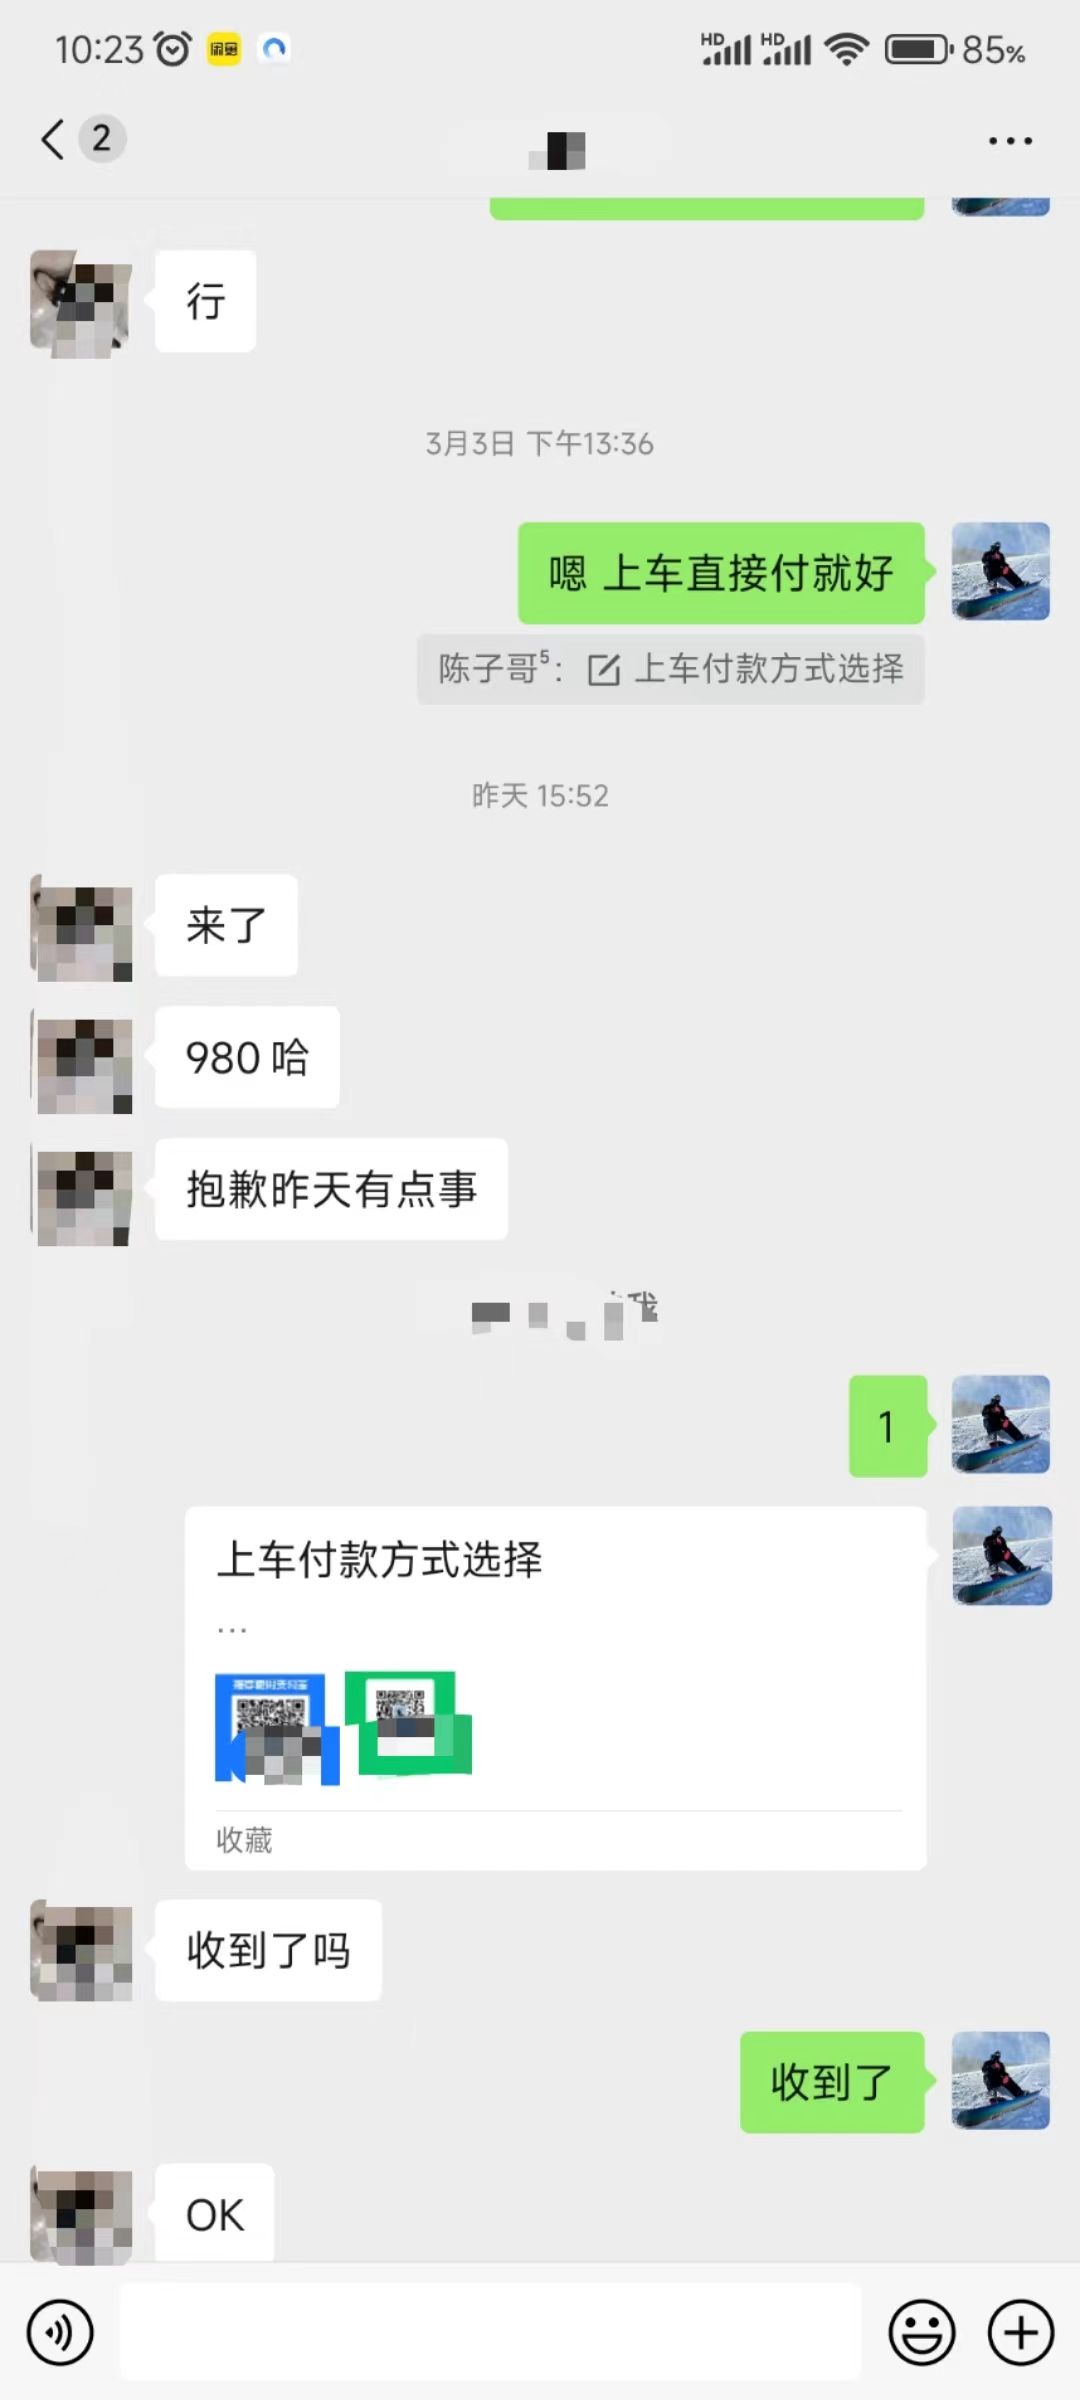 （9261期）QQ无人直播新赛道新玩法一天轻松500腾讯官方流量扶持